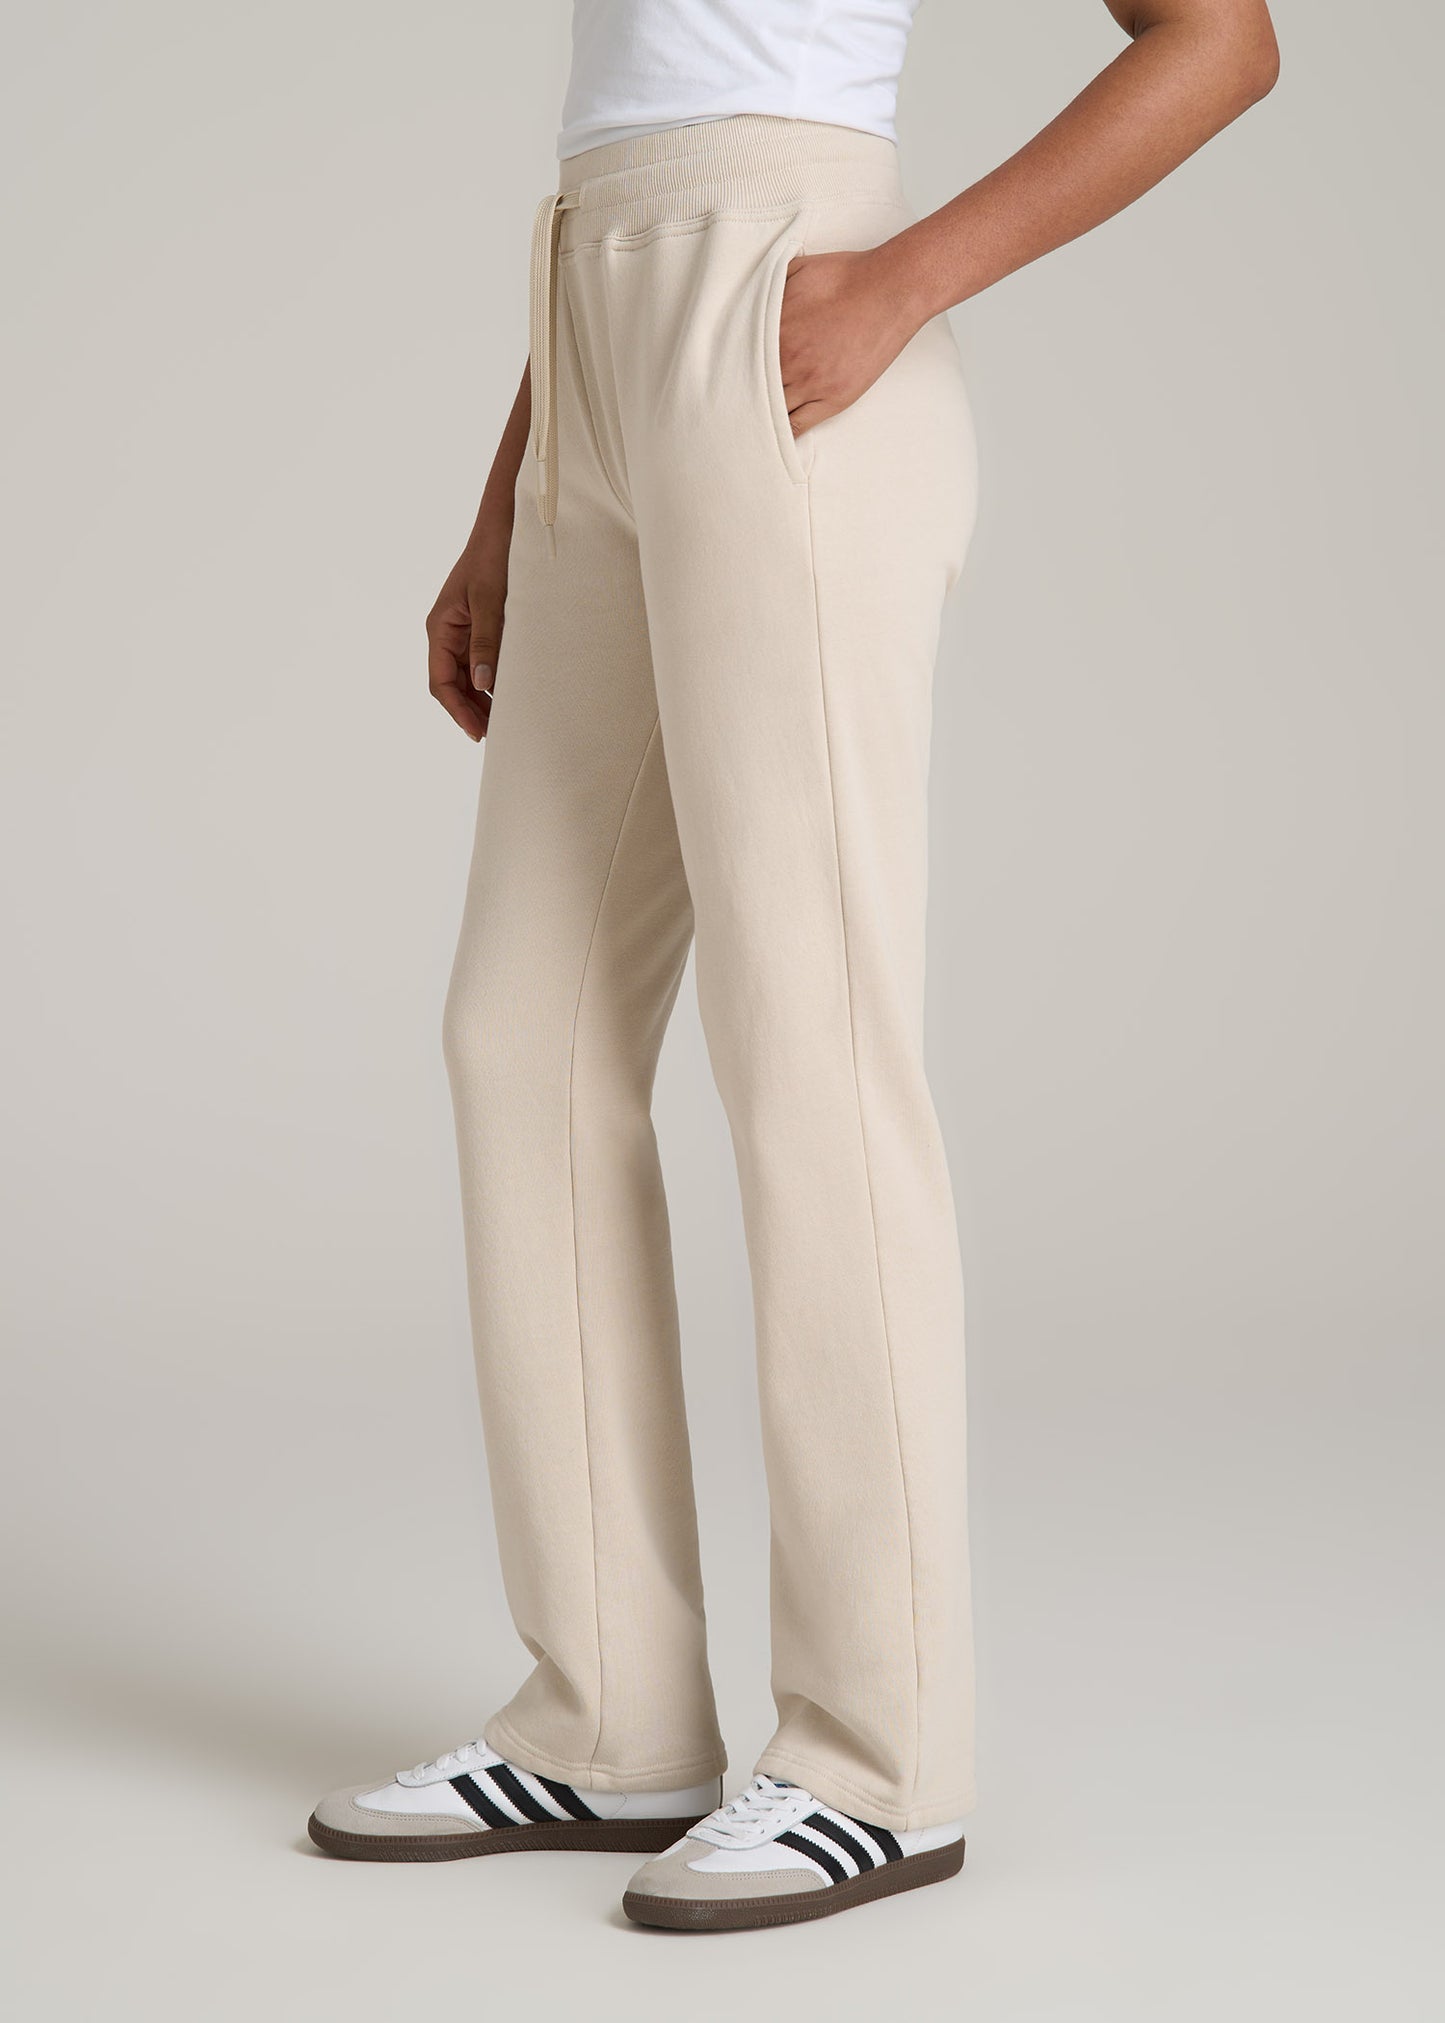 Wearever Fleece Open-Bottom Sweatpants for Tall Women in Light Stone